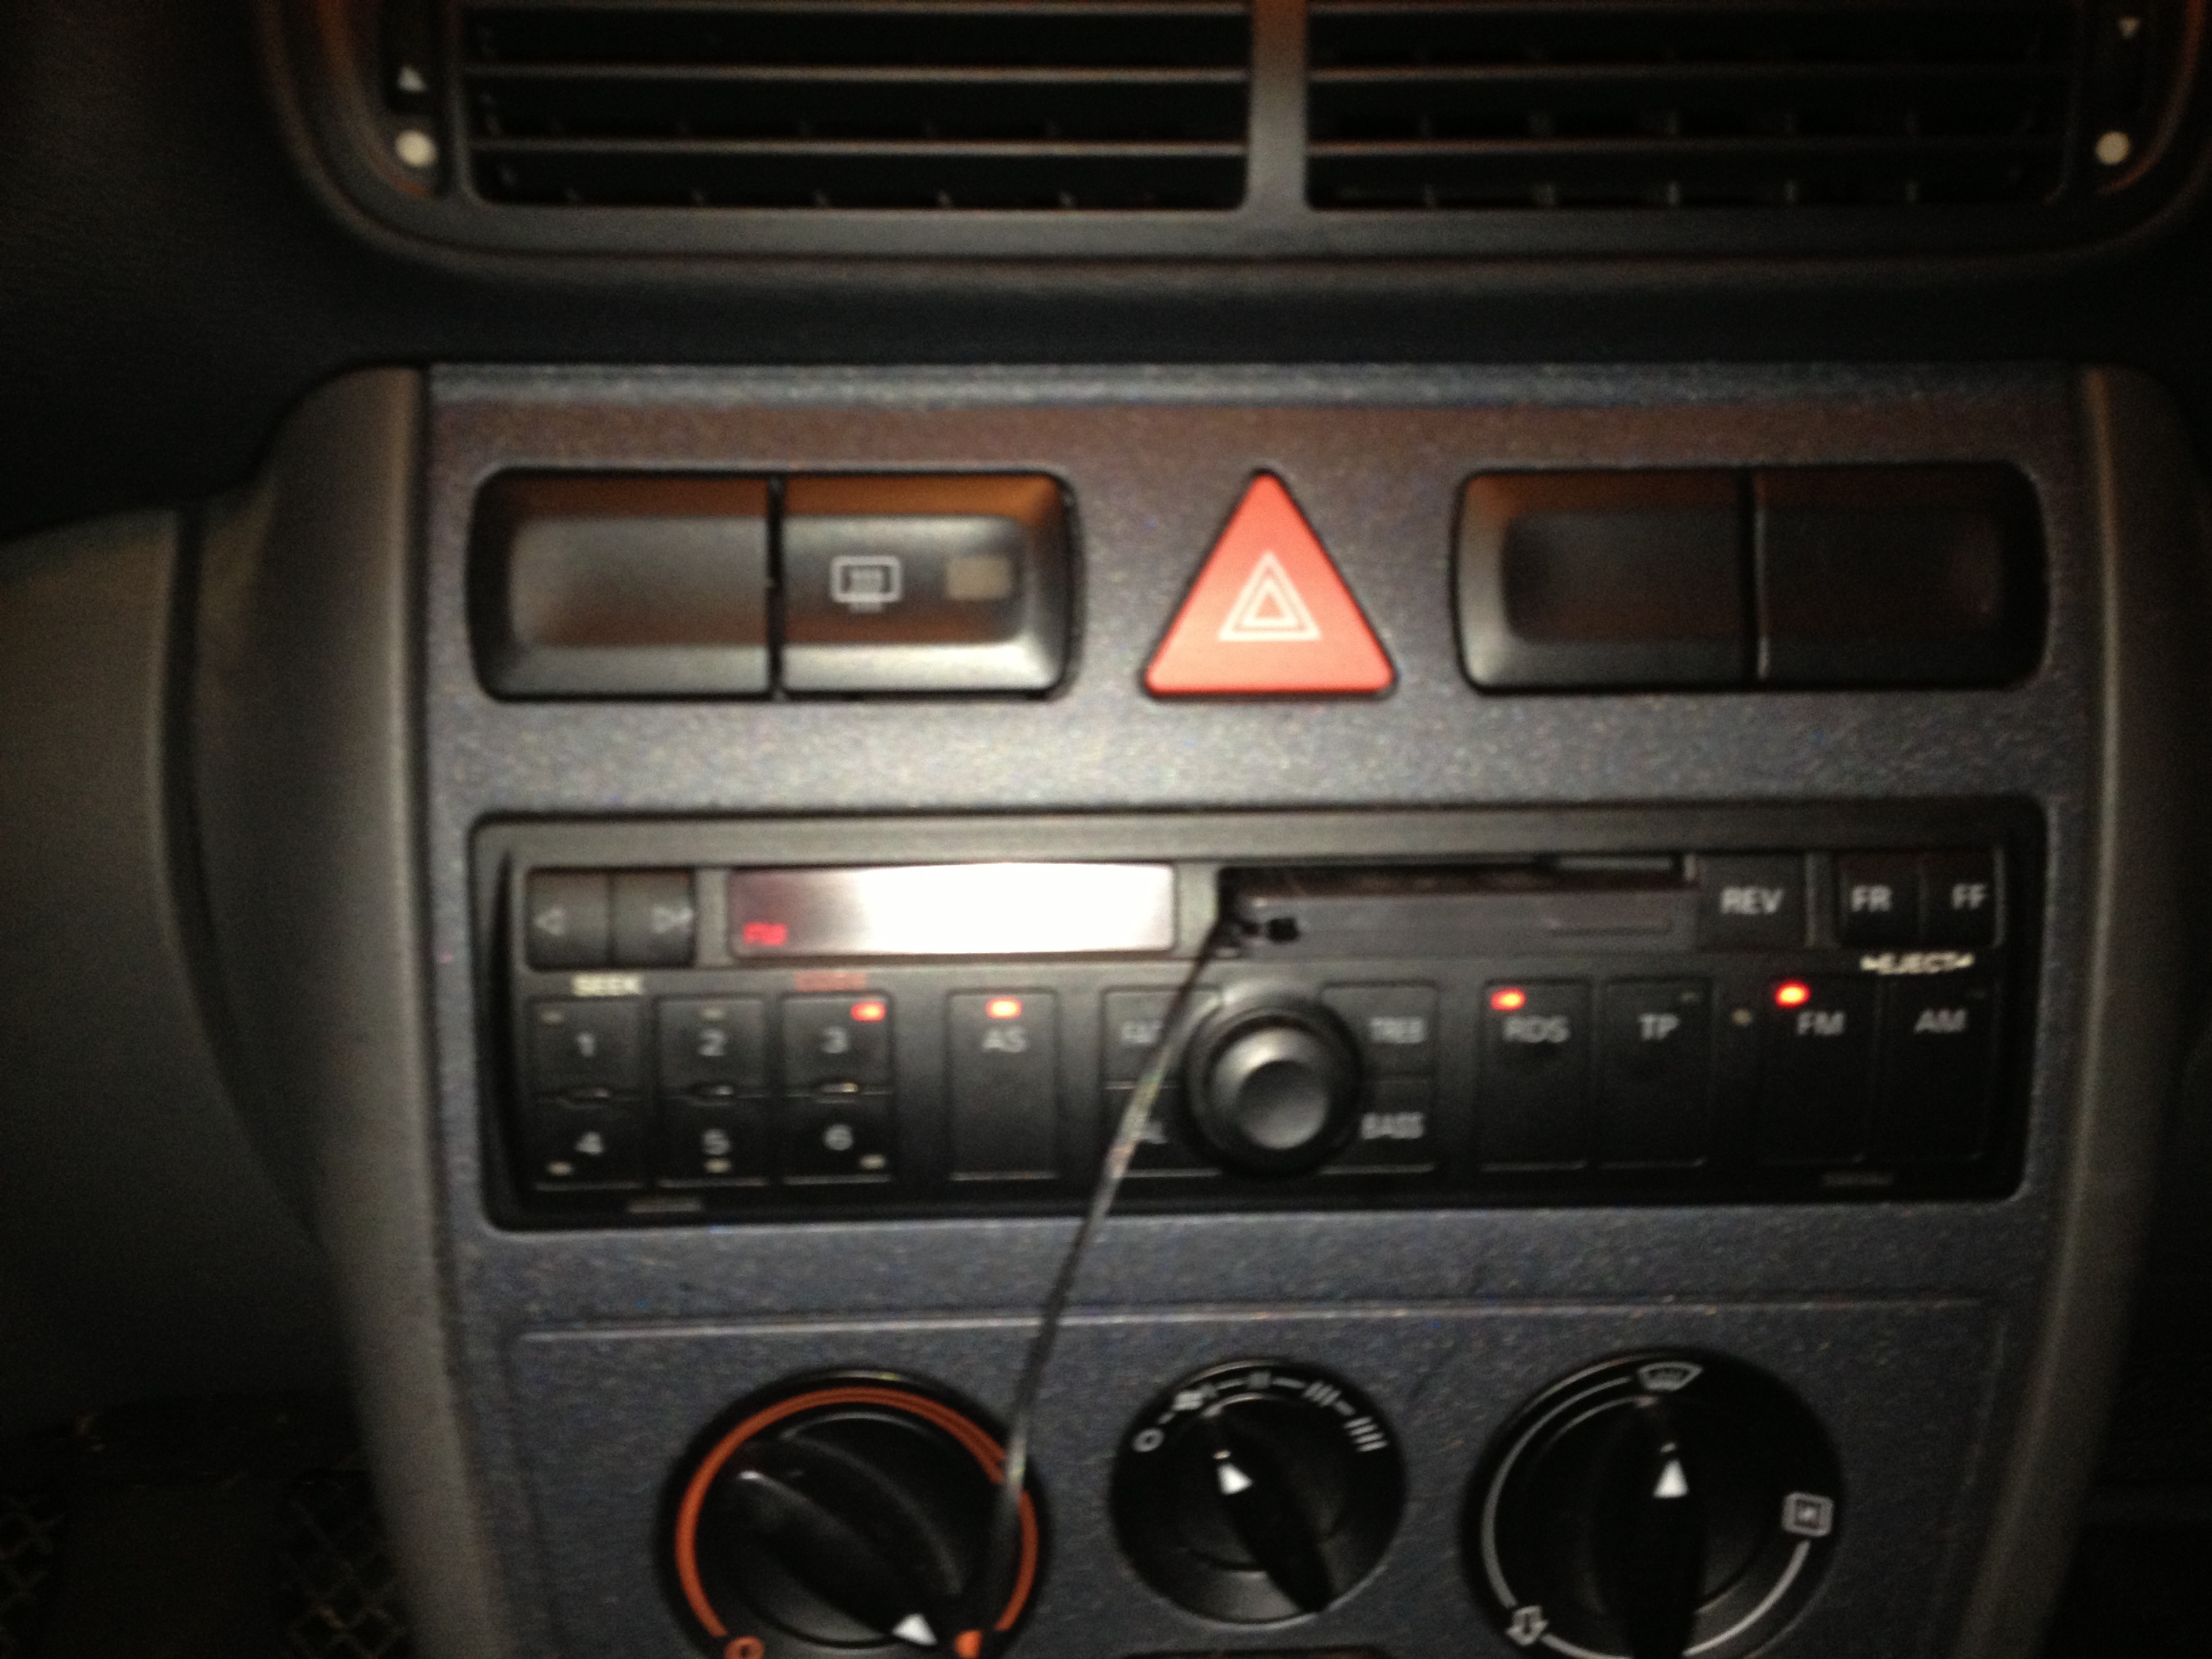 Altes Autoradio ohne MP3 und Co.? Kein Problem mit dieser Kassette